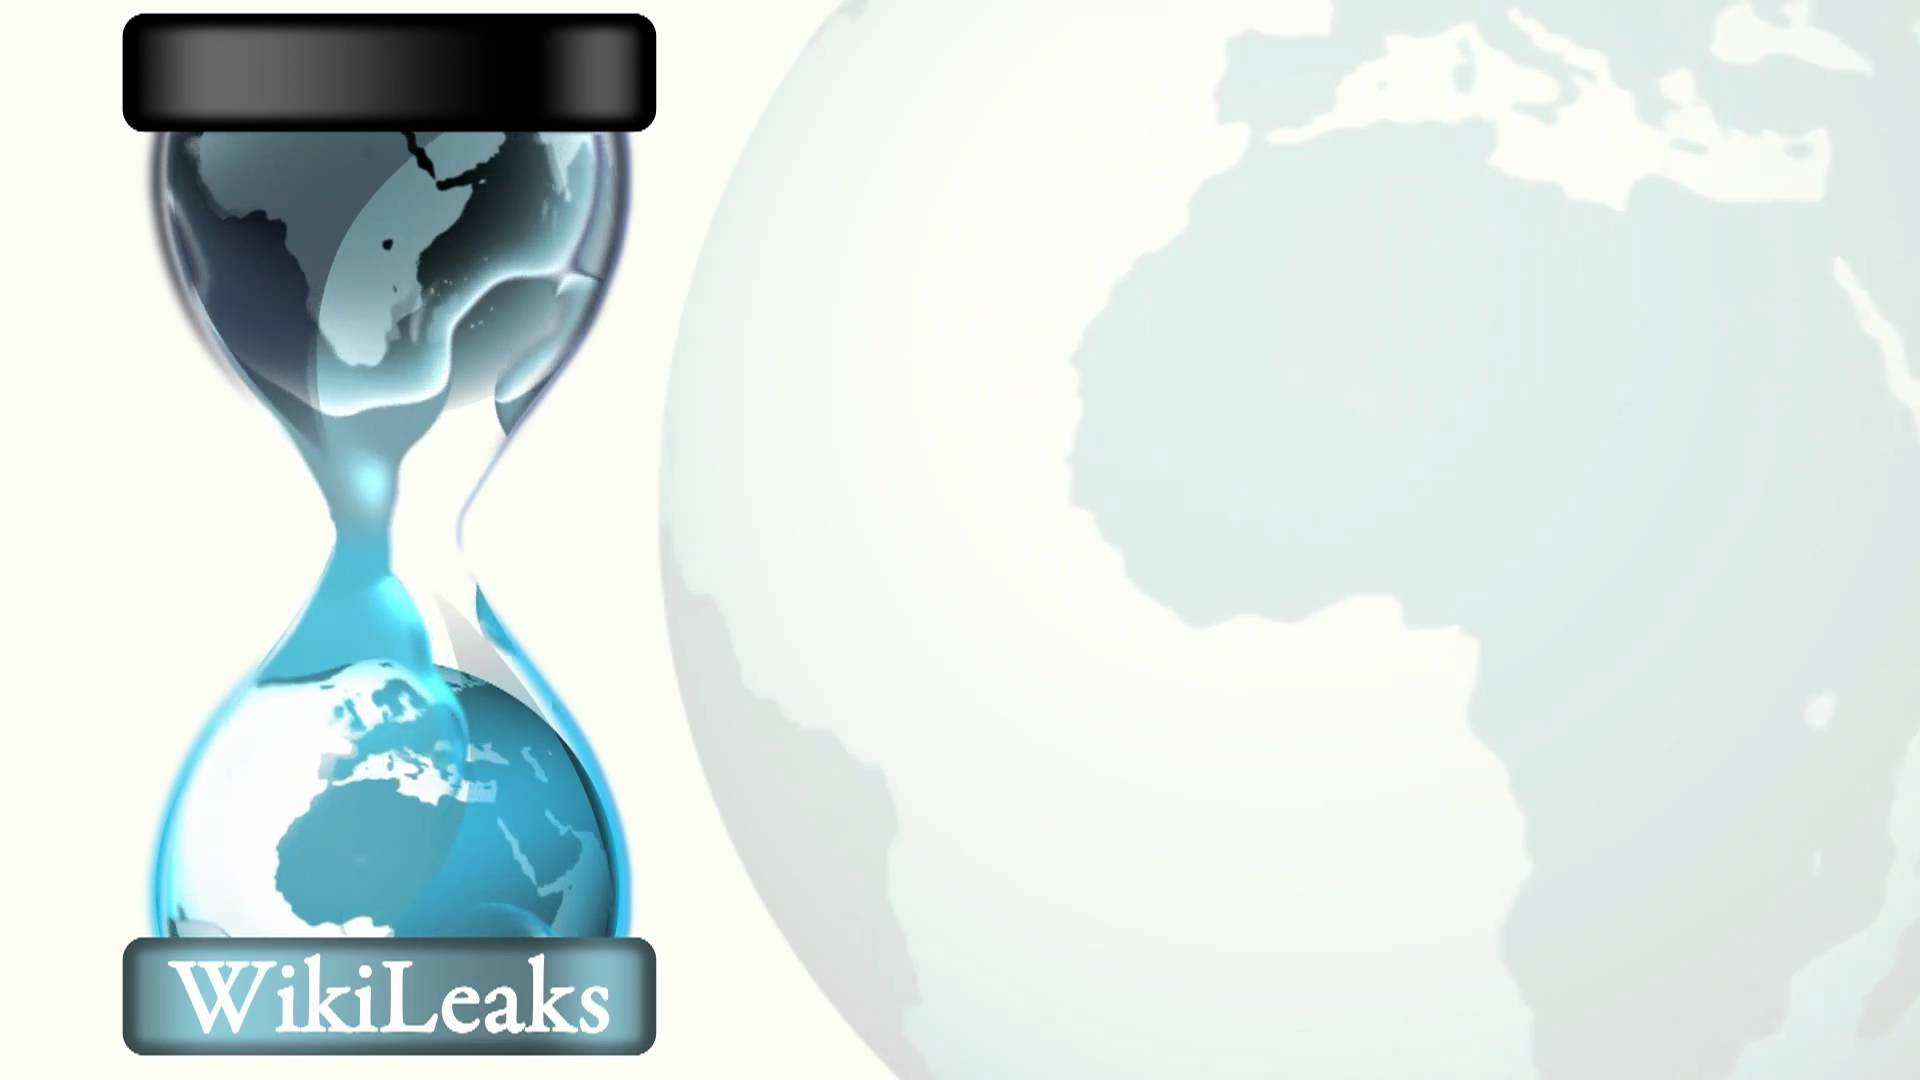 Ezért veszélyes igazság a WikiLeaks – dokumentumfilm 18+